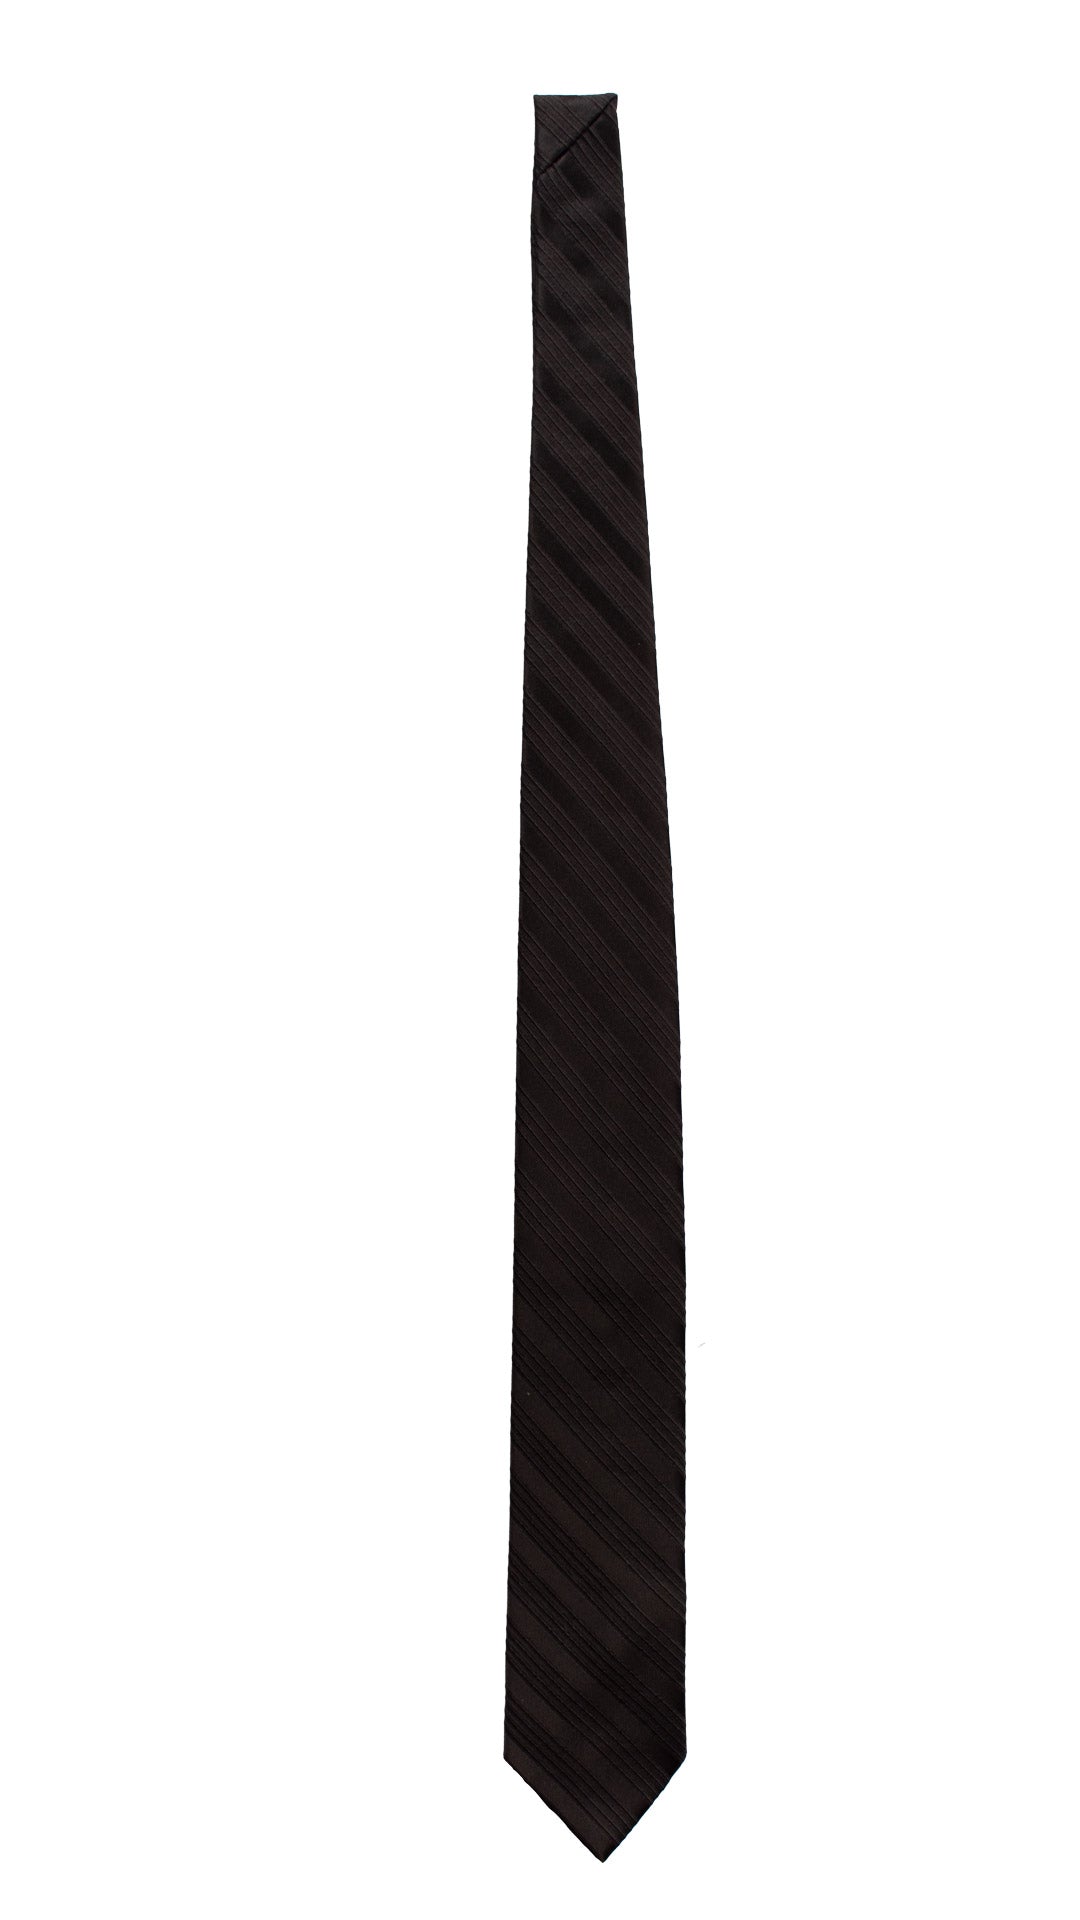 Cravatta Regimental da Cerimonia di Seta Nera con Righe Tono su Tono CY6779 Intera